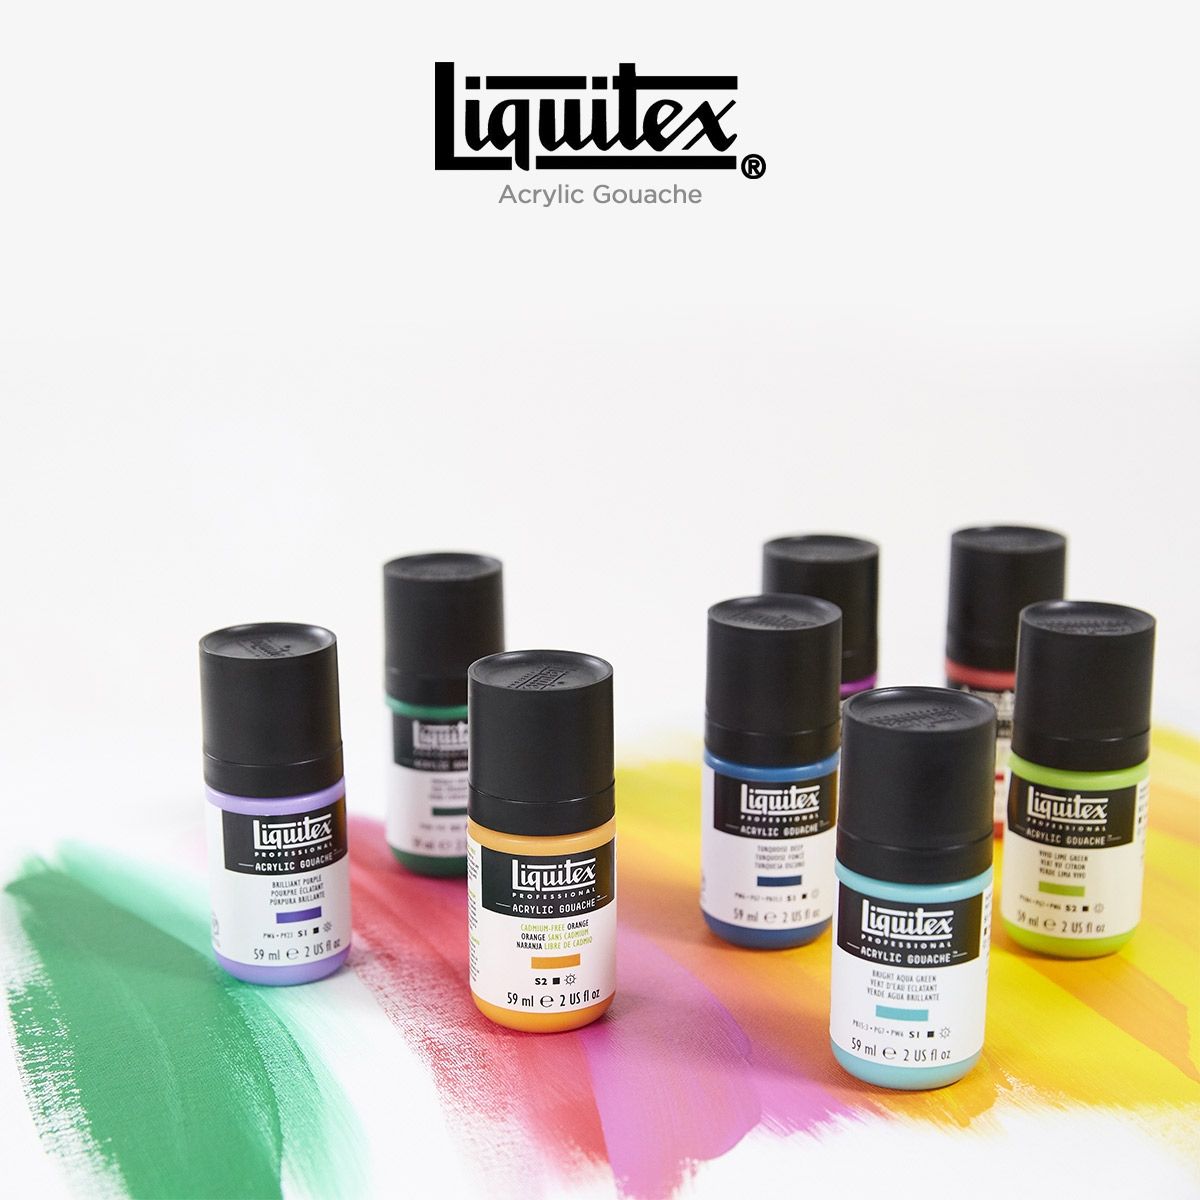 Liquitex Acrylic Gouache Paint & Sets